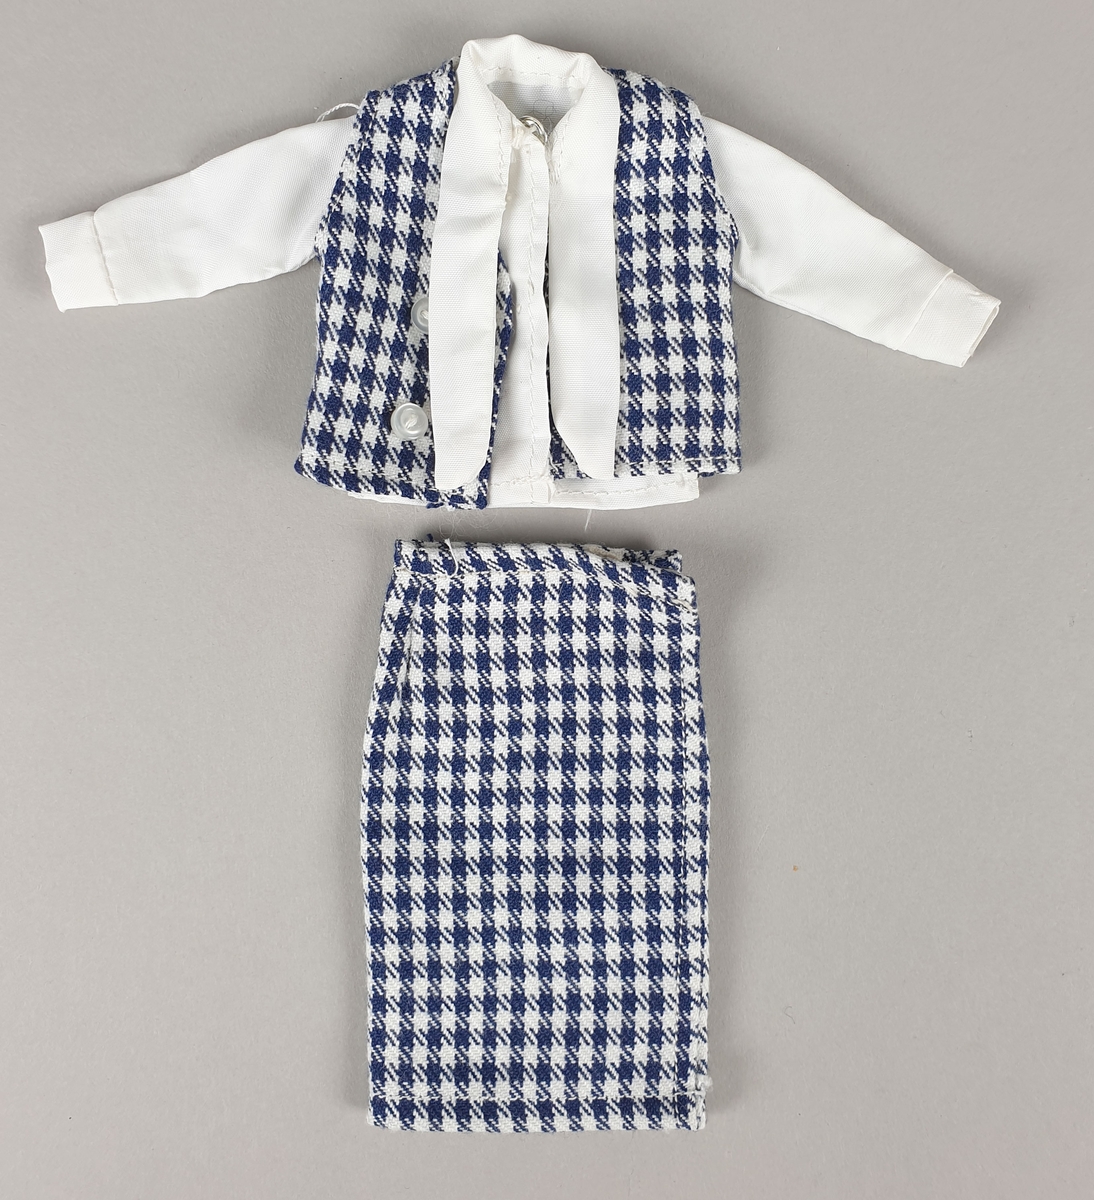 Drakt bestående av bluse (jakke) og skjørt i blått og hvitt.